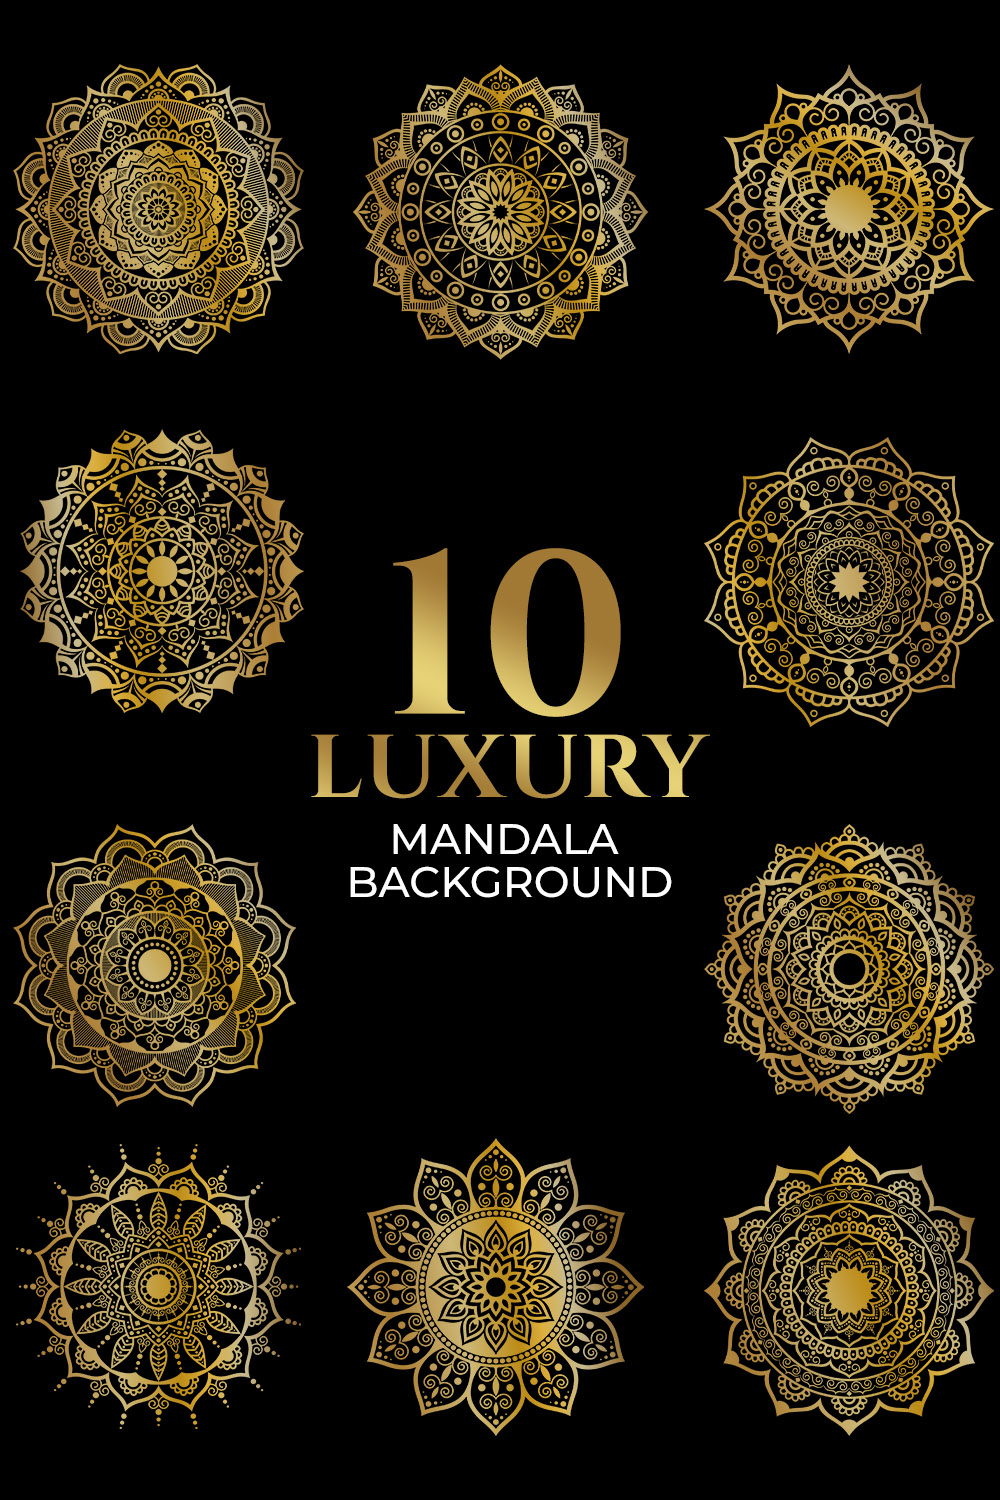 10 Luxury mandala design bundle Golden mandala design creative mandala design bundle pinterest preview image.